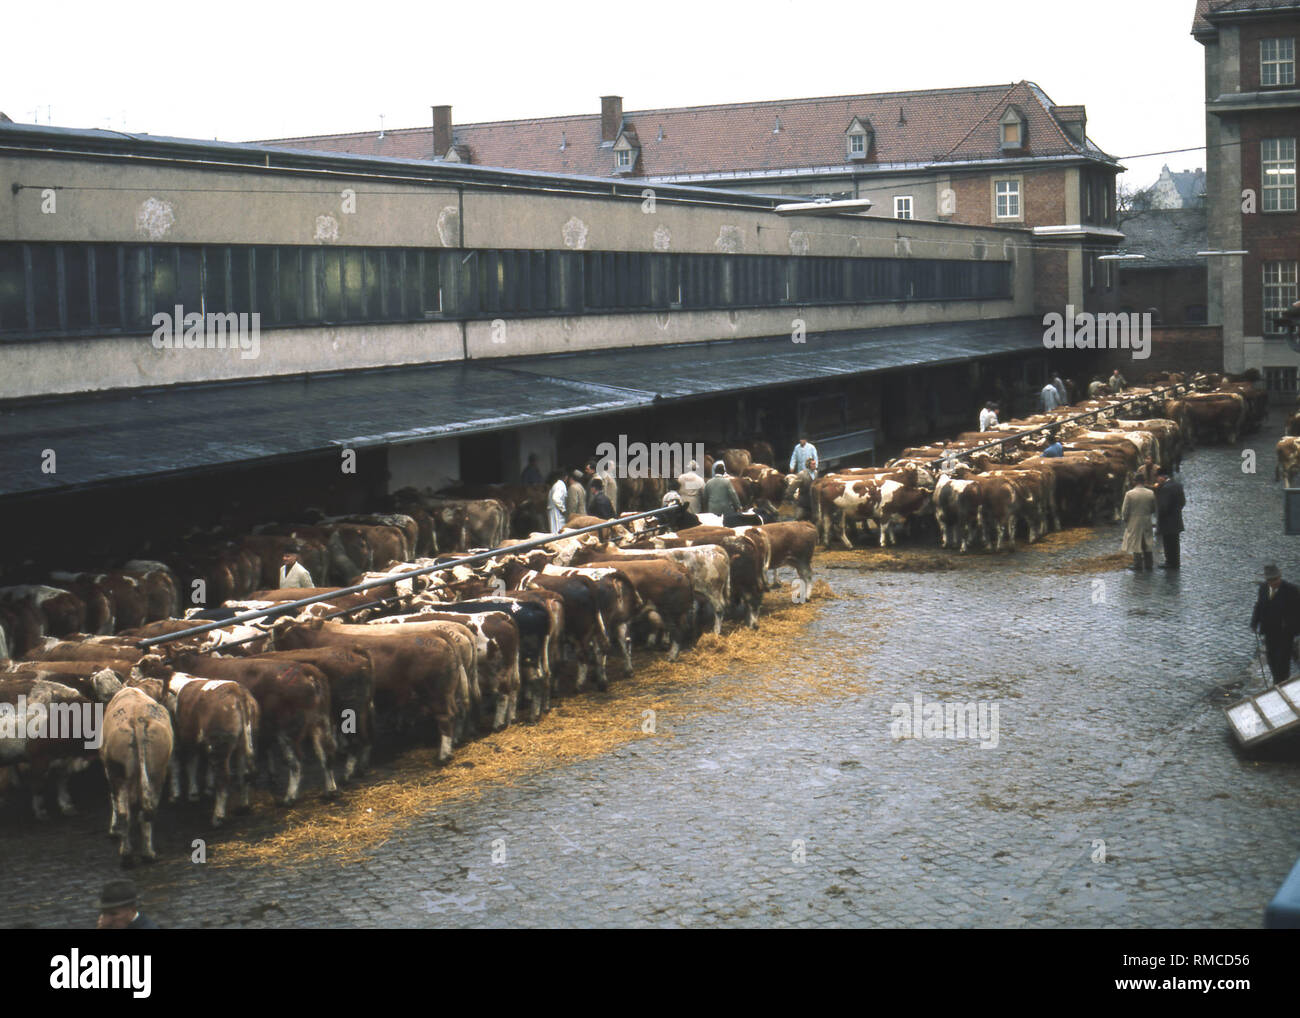 Le Viehhof Muenchen est le centre de commerce pour les agriculteurs et les marchands qui veulent vendre du bétail. Le handsale est considéré comme un contrat ayant force obligatoire. Banque D'Images